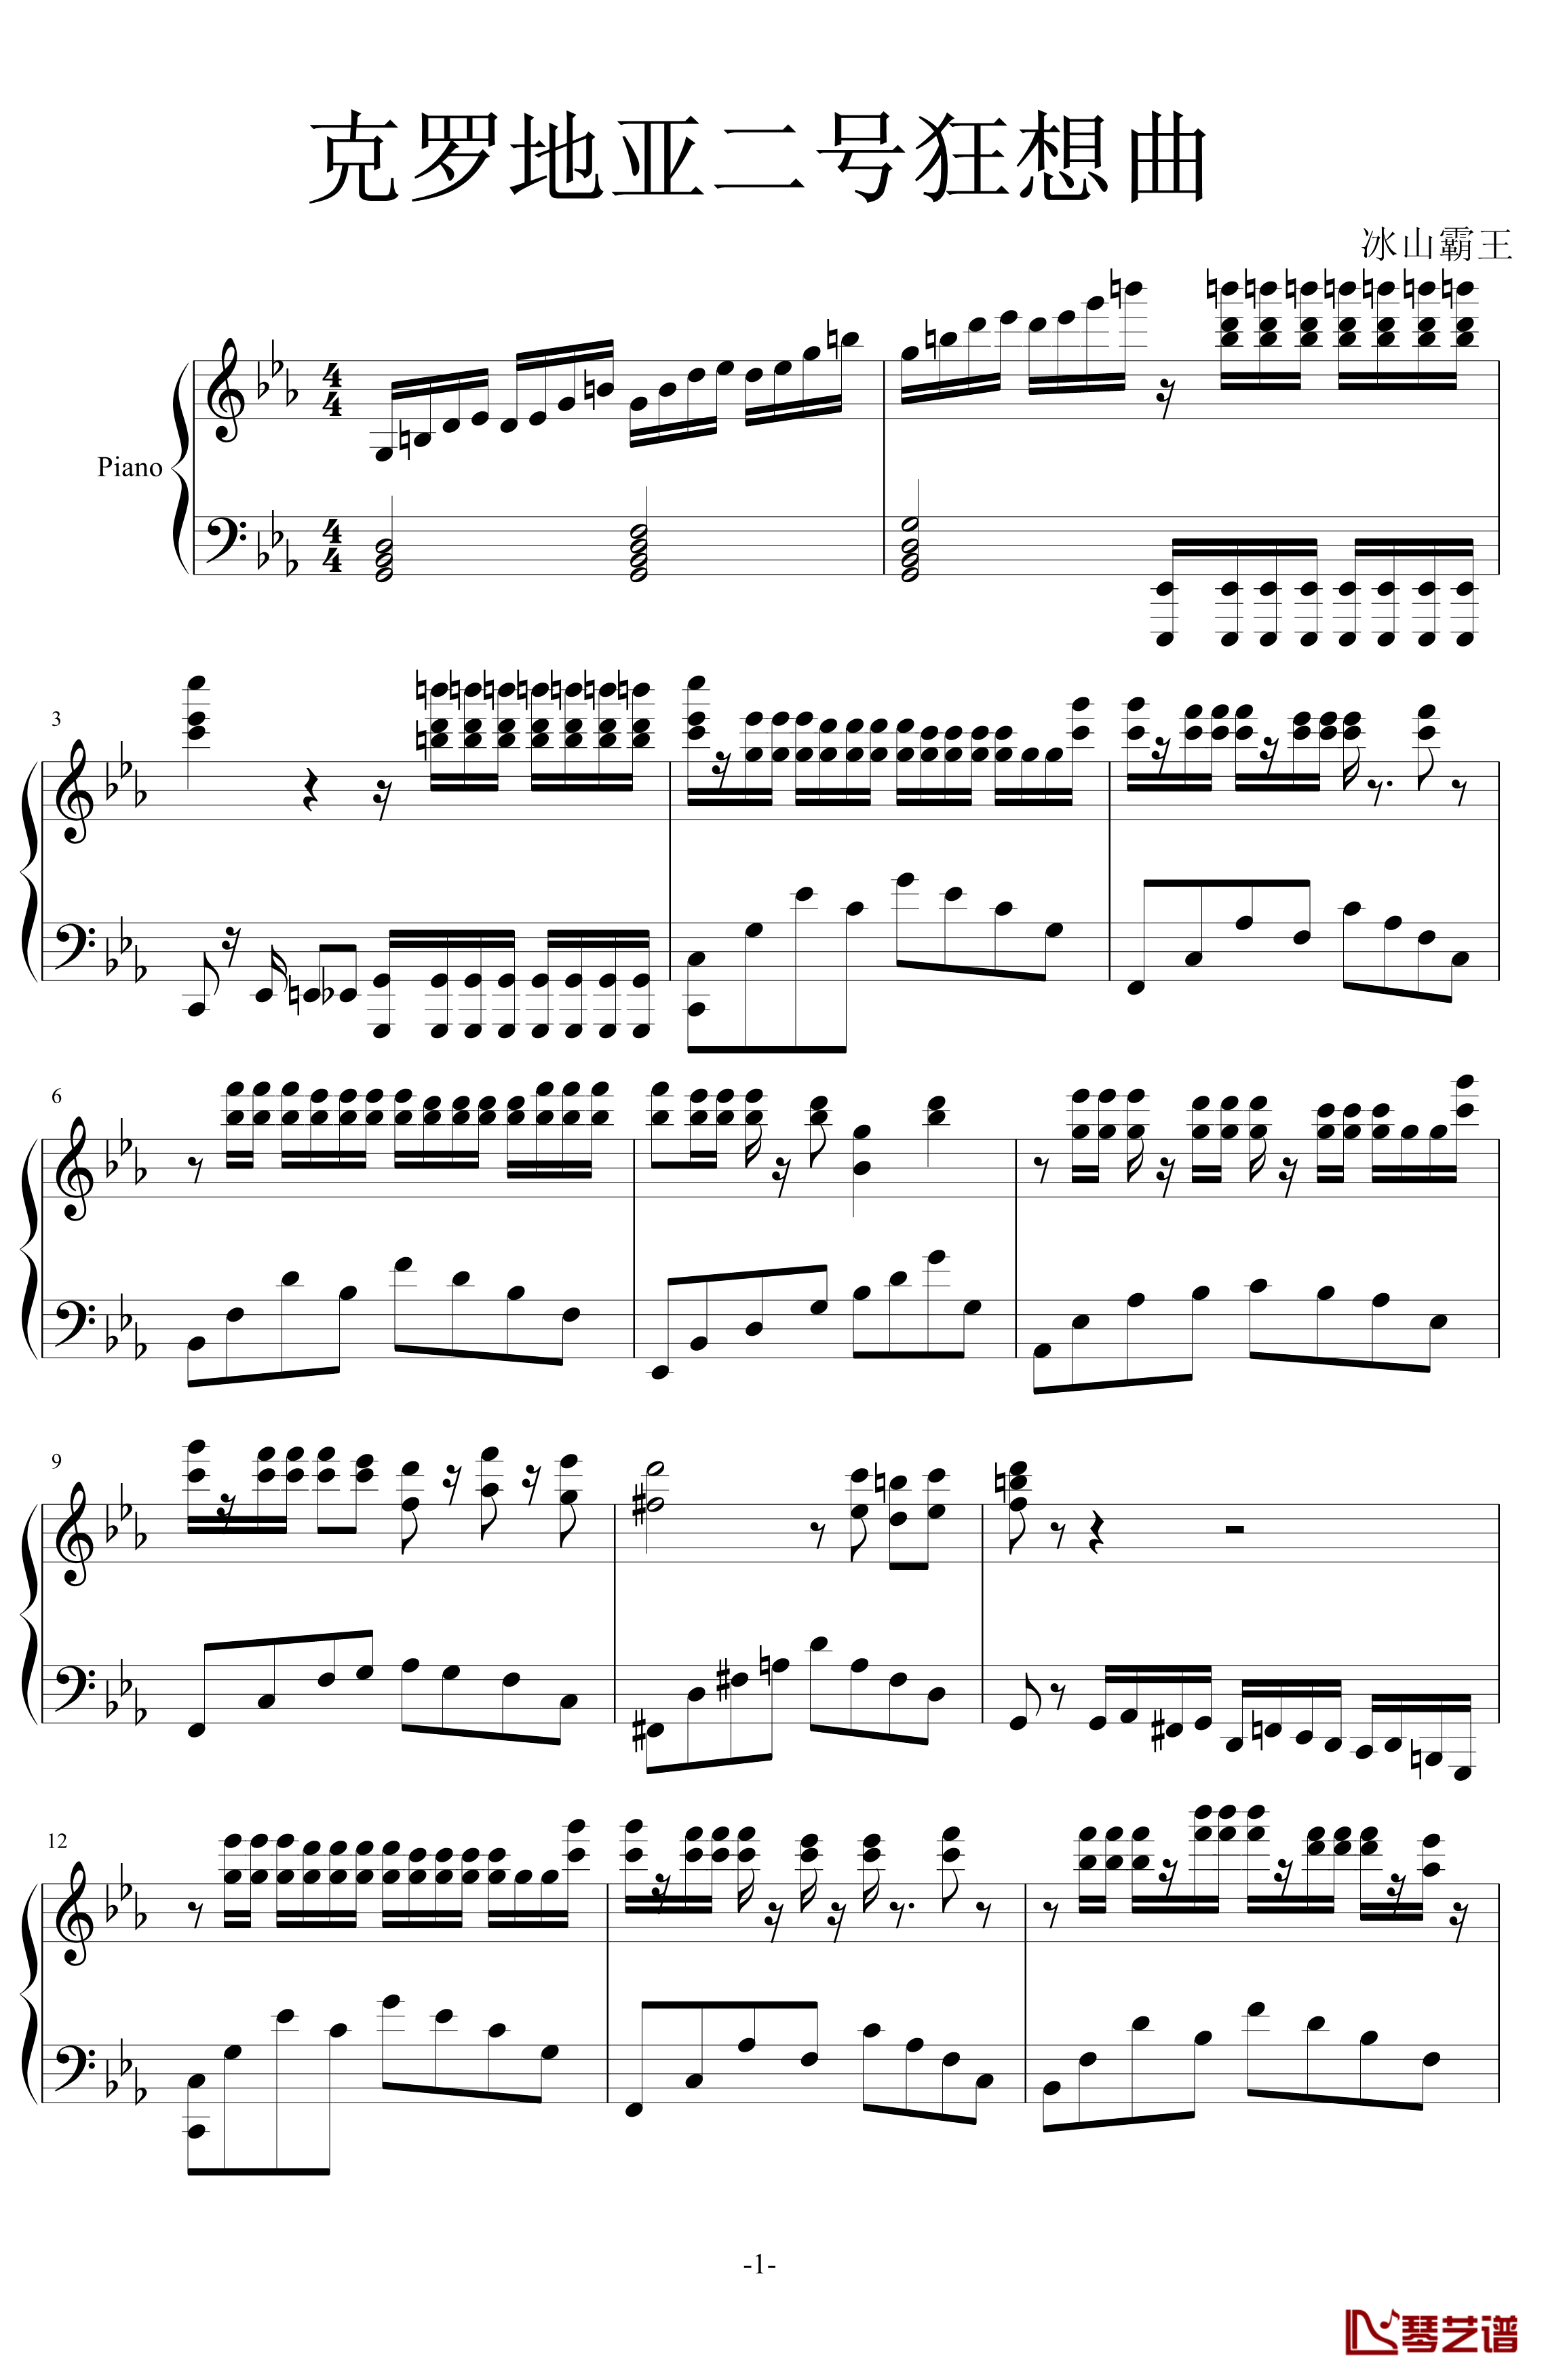 克罗地亚二号狂想曲钢琴谱-马克西姆-Maksim·Mrvica1